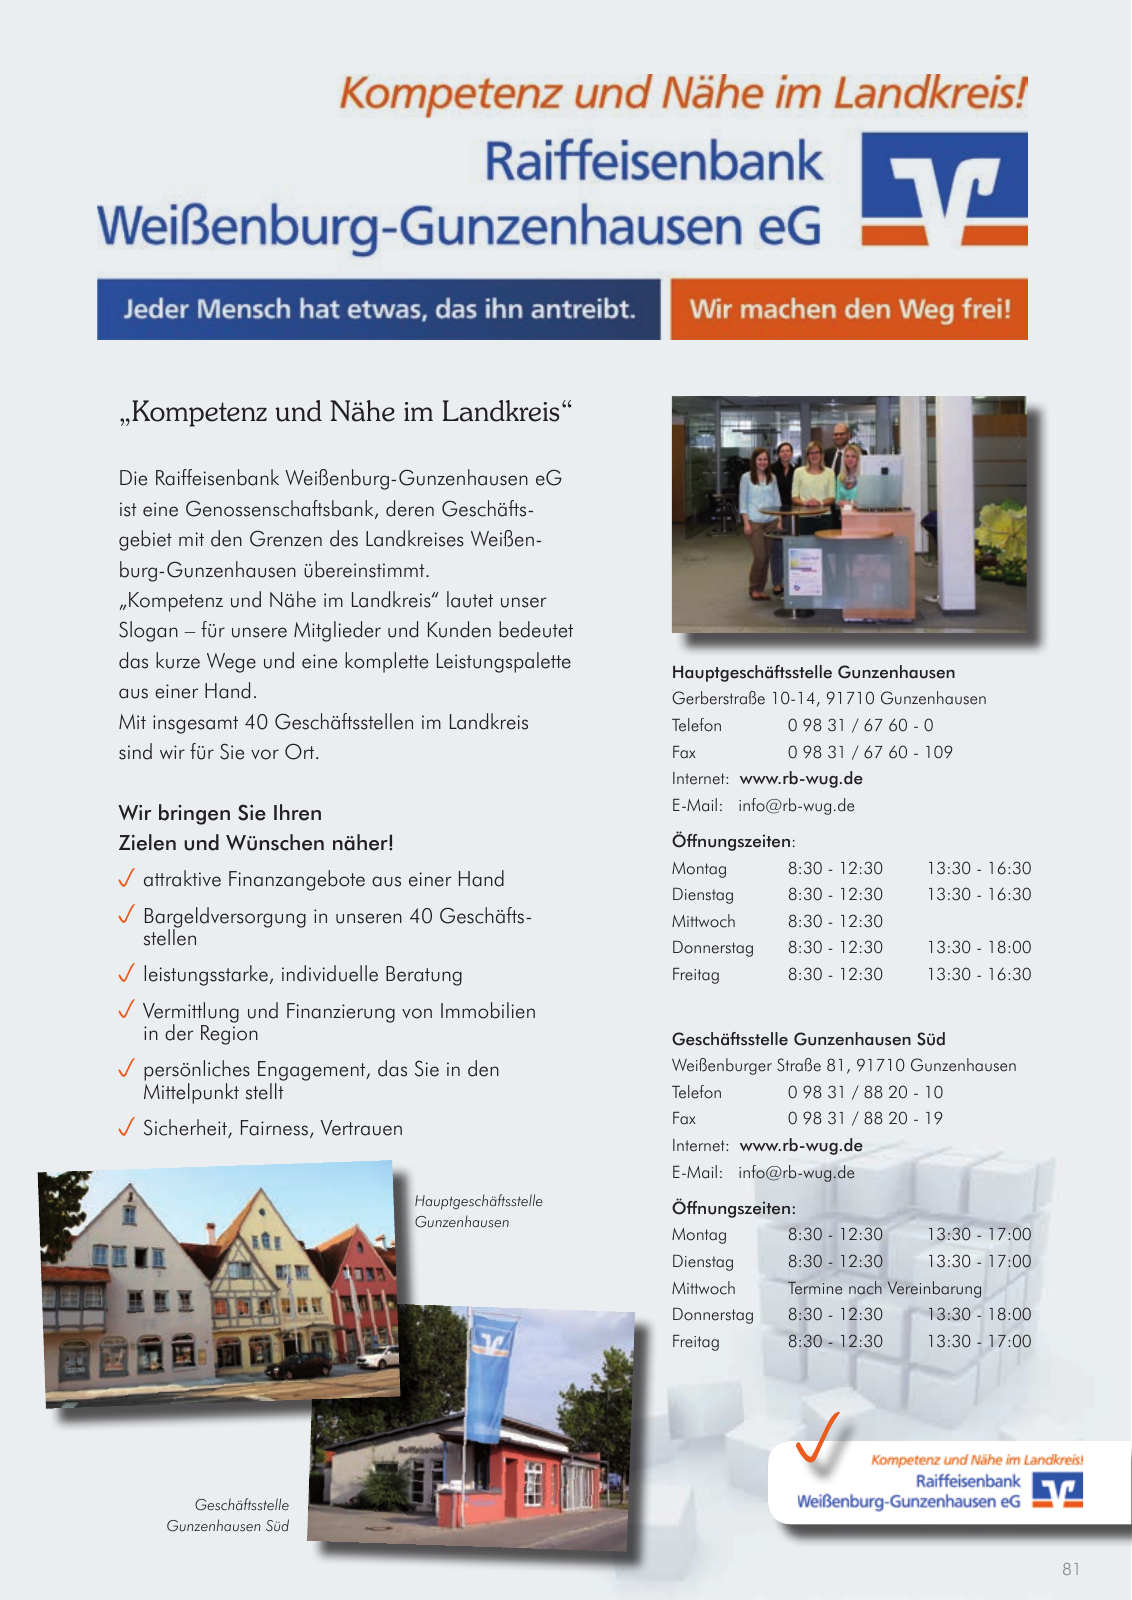 Vorschau leben & arbeiten in Gunzenhausen - 2015 Seite 81